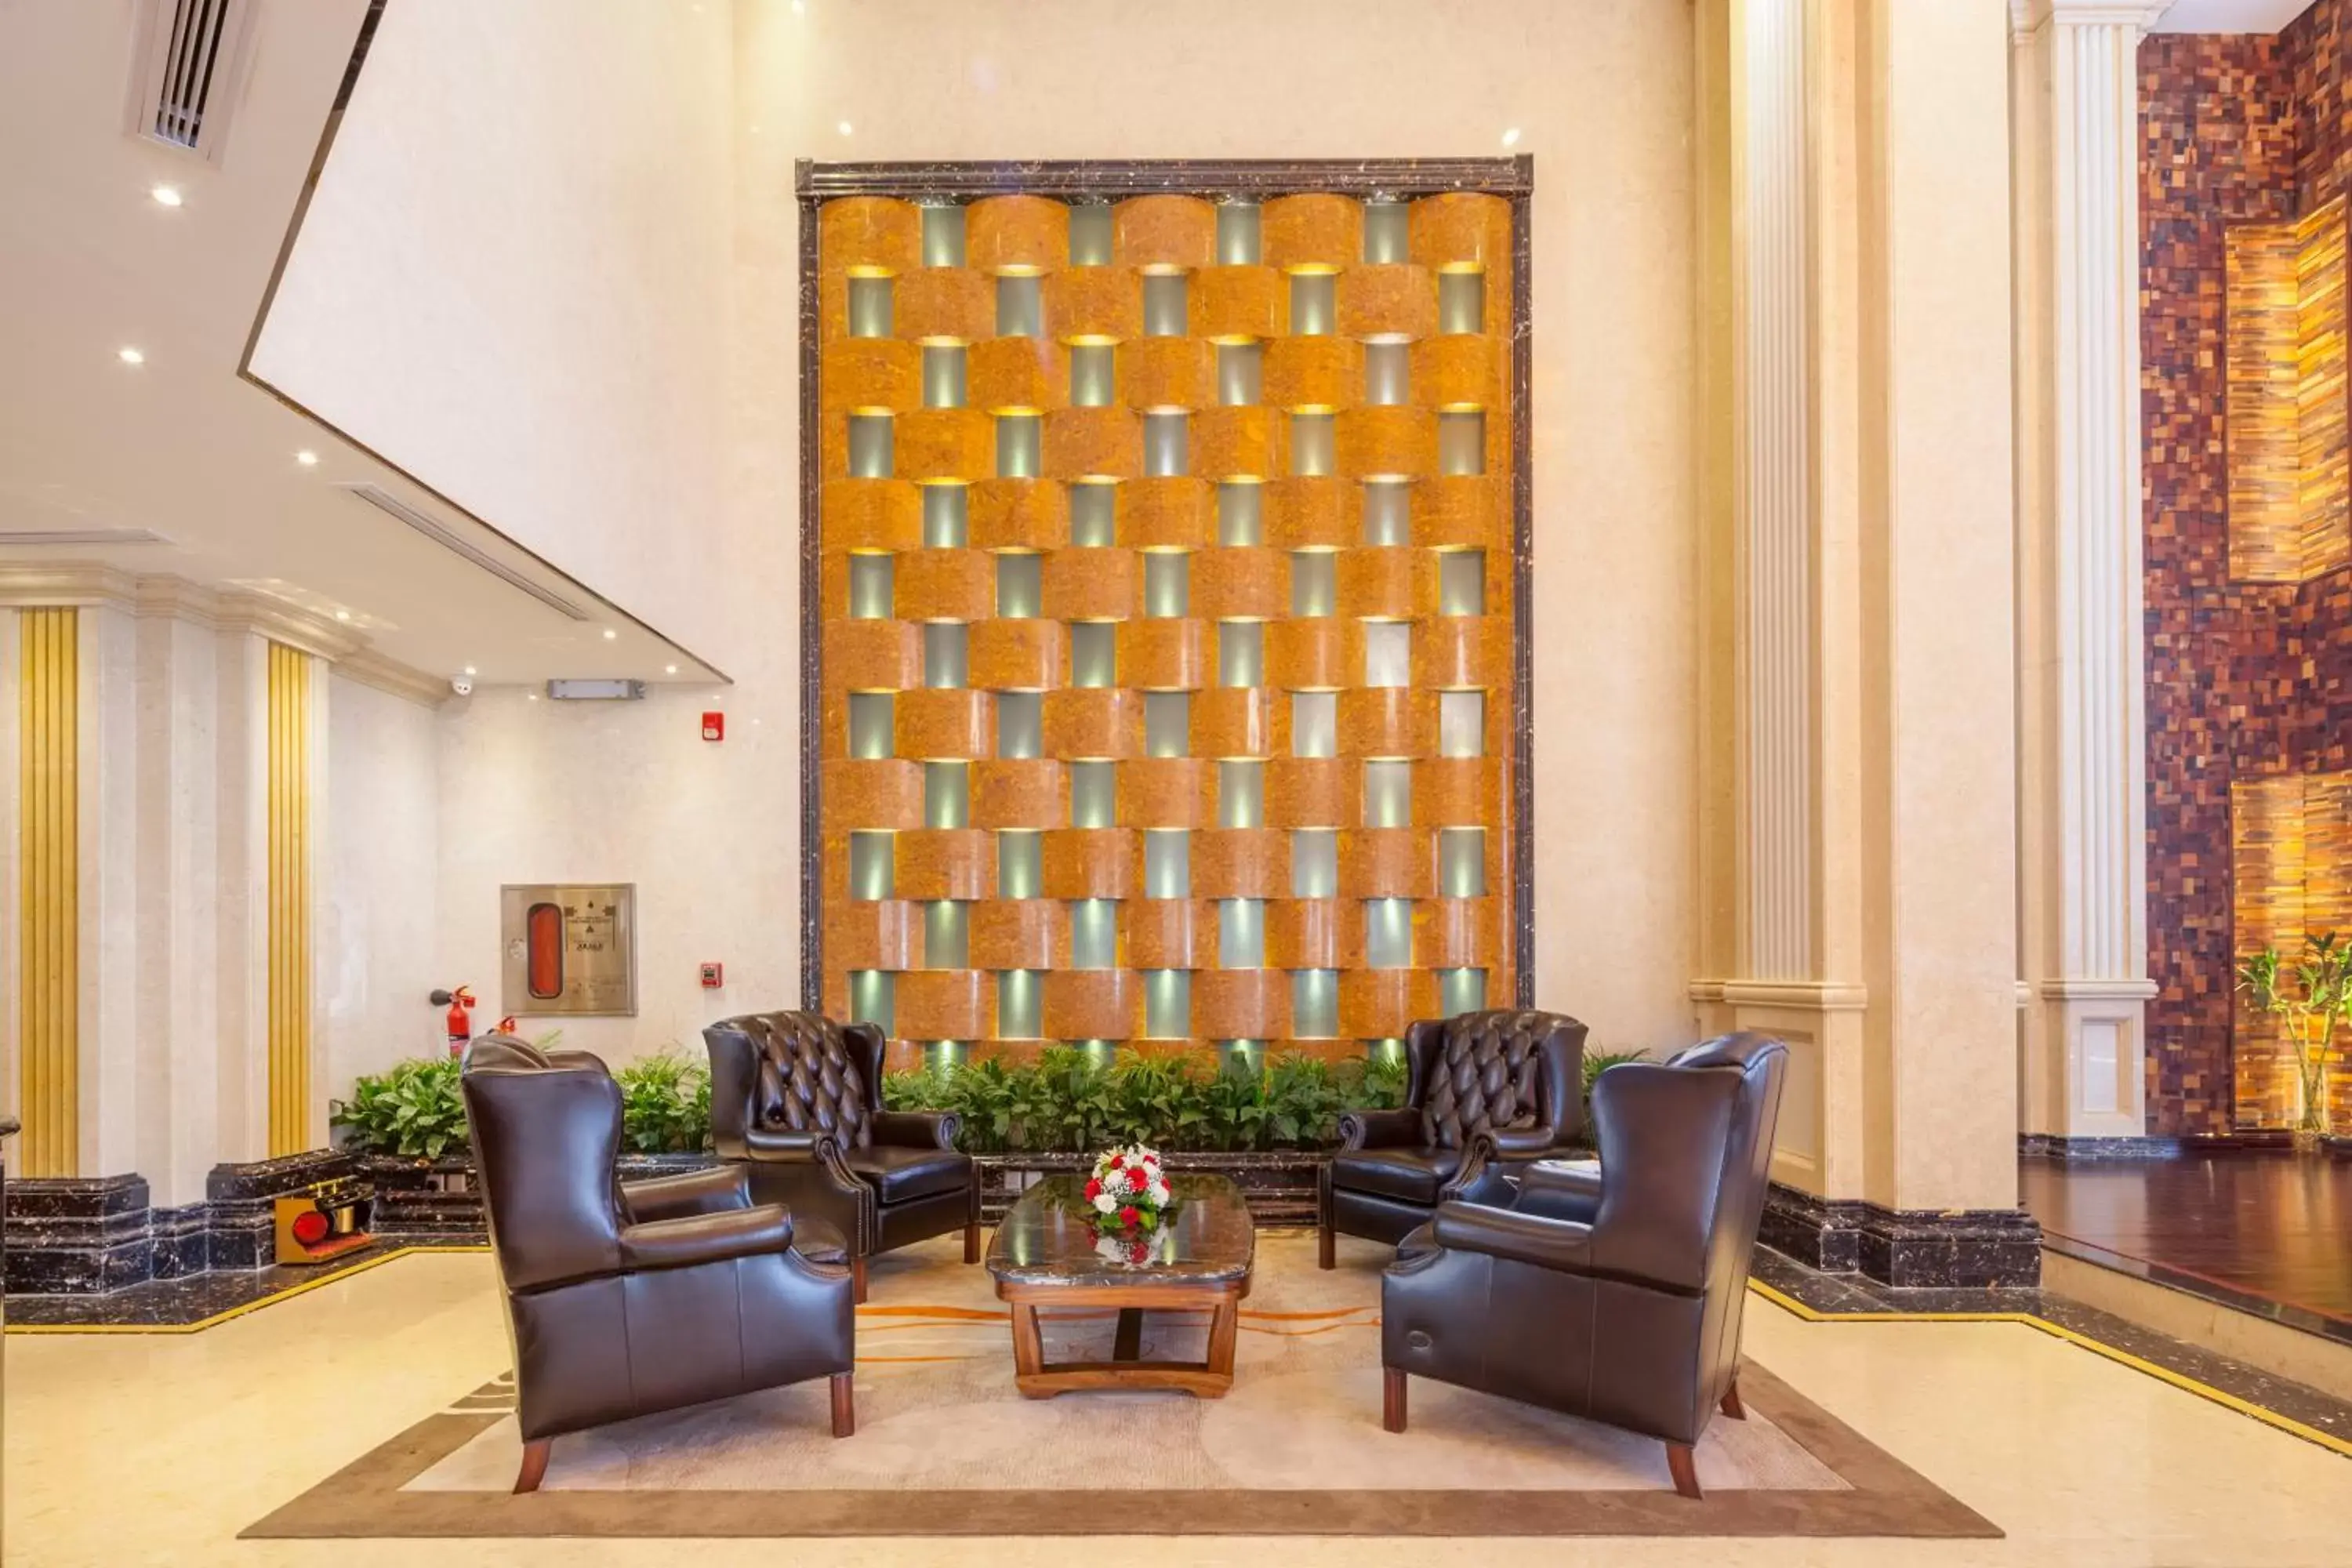 Lobby or reception, Lobby/Reception in Al Ahsa Grand Hotel